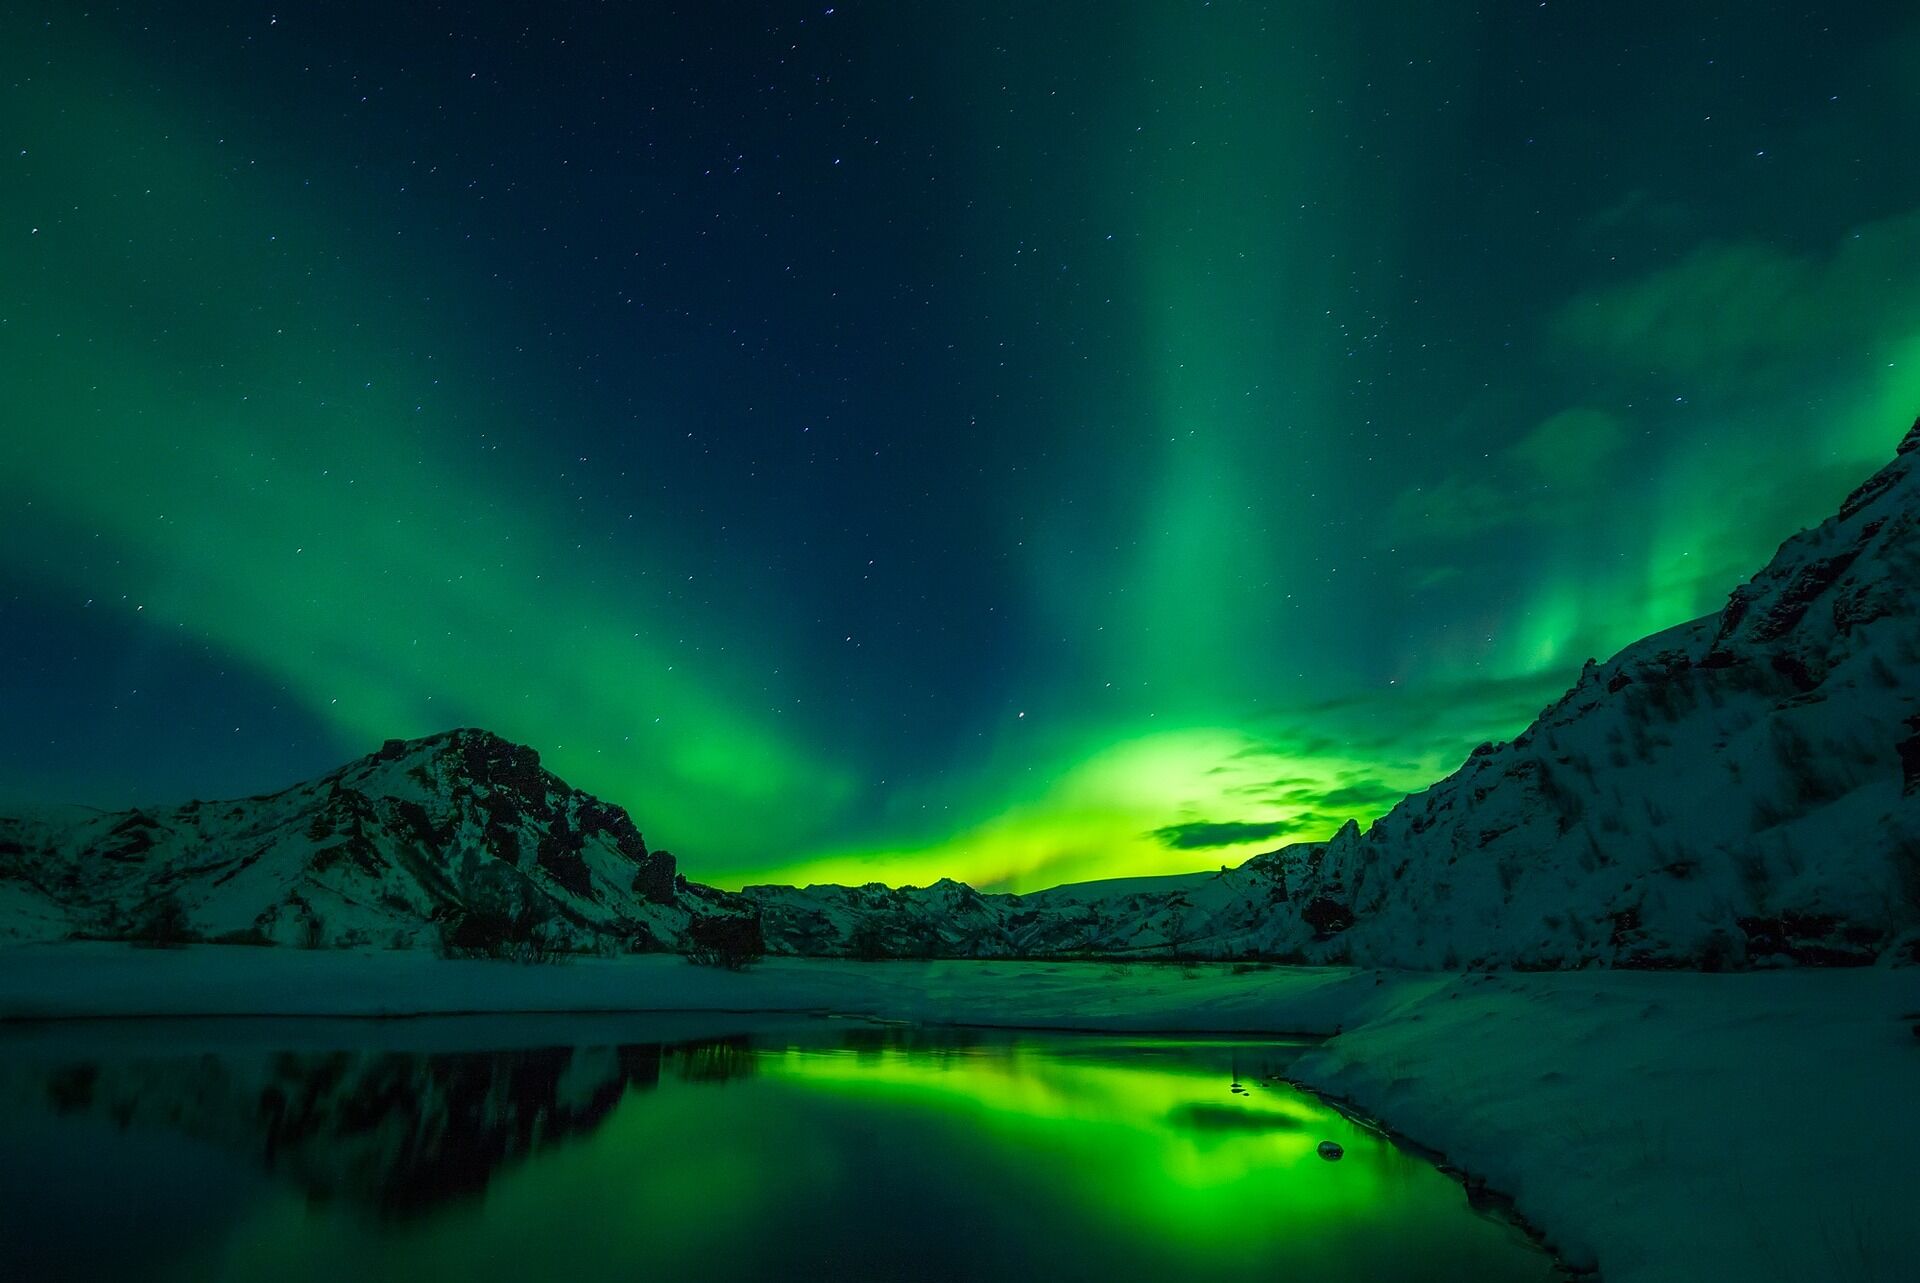 Com aurora boreal, Islândia enfrenta um problema: os turistas querem  dirigir e olhar para o céu - Europeanway